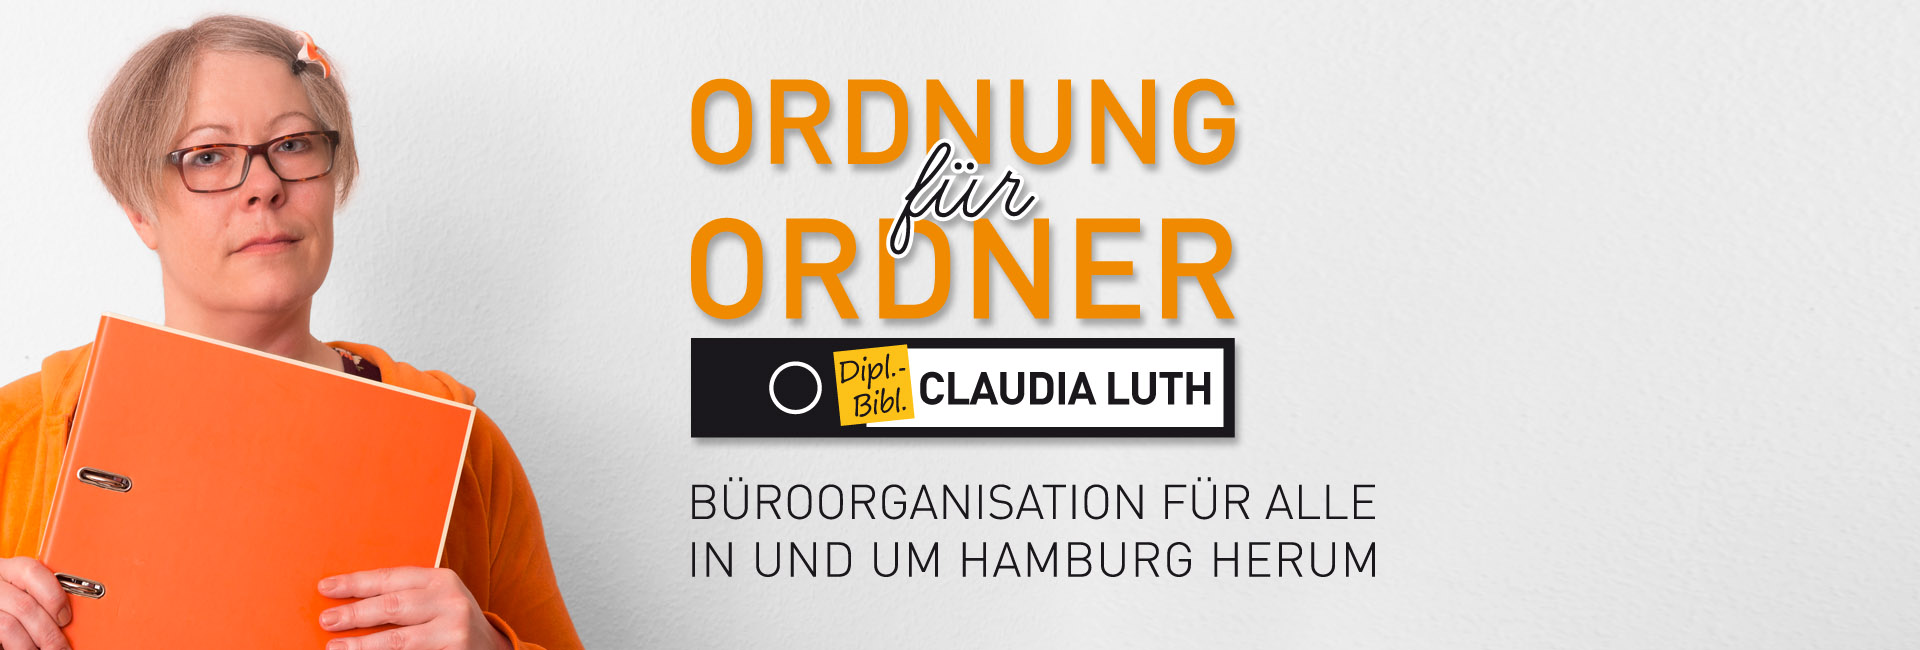 Büroorganisation - Ordnung für Ordner - Claudia Luth